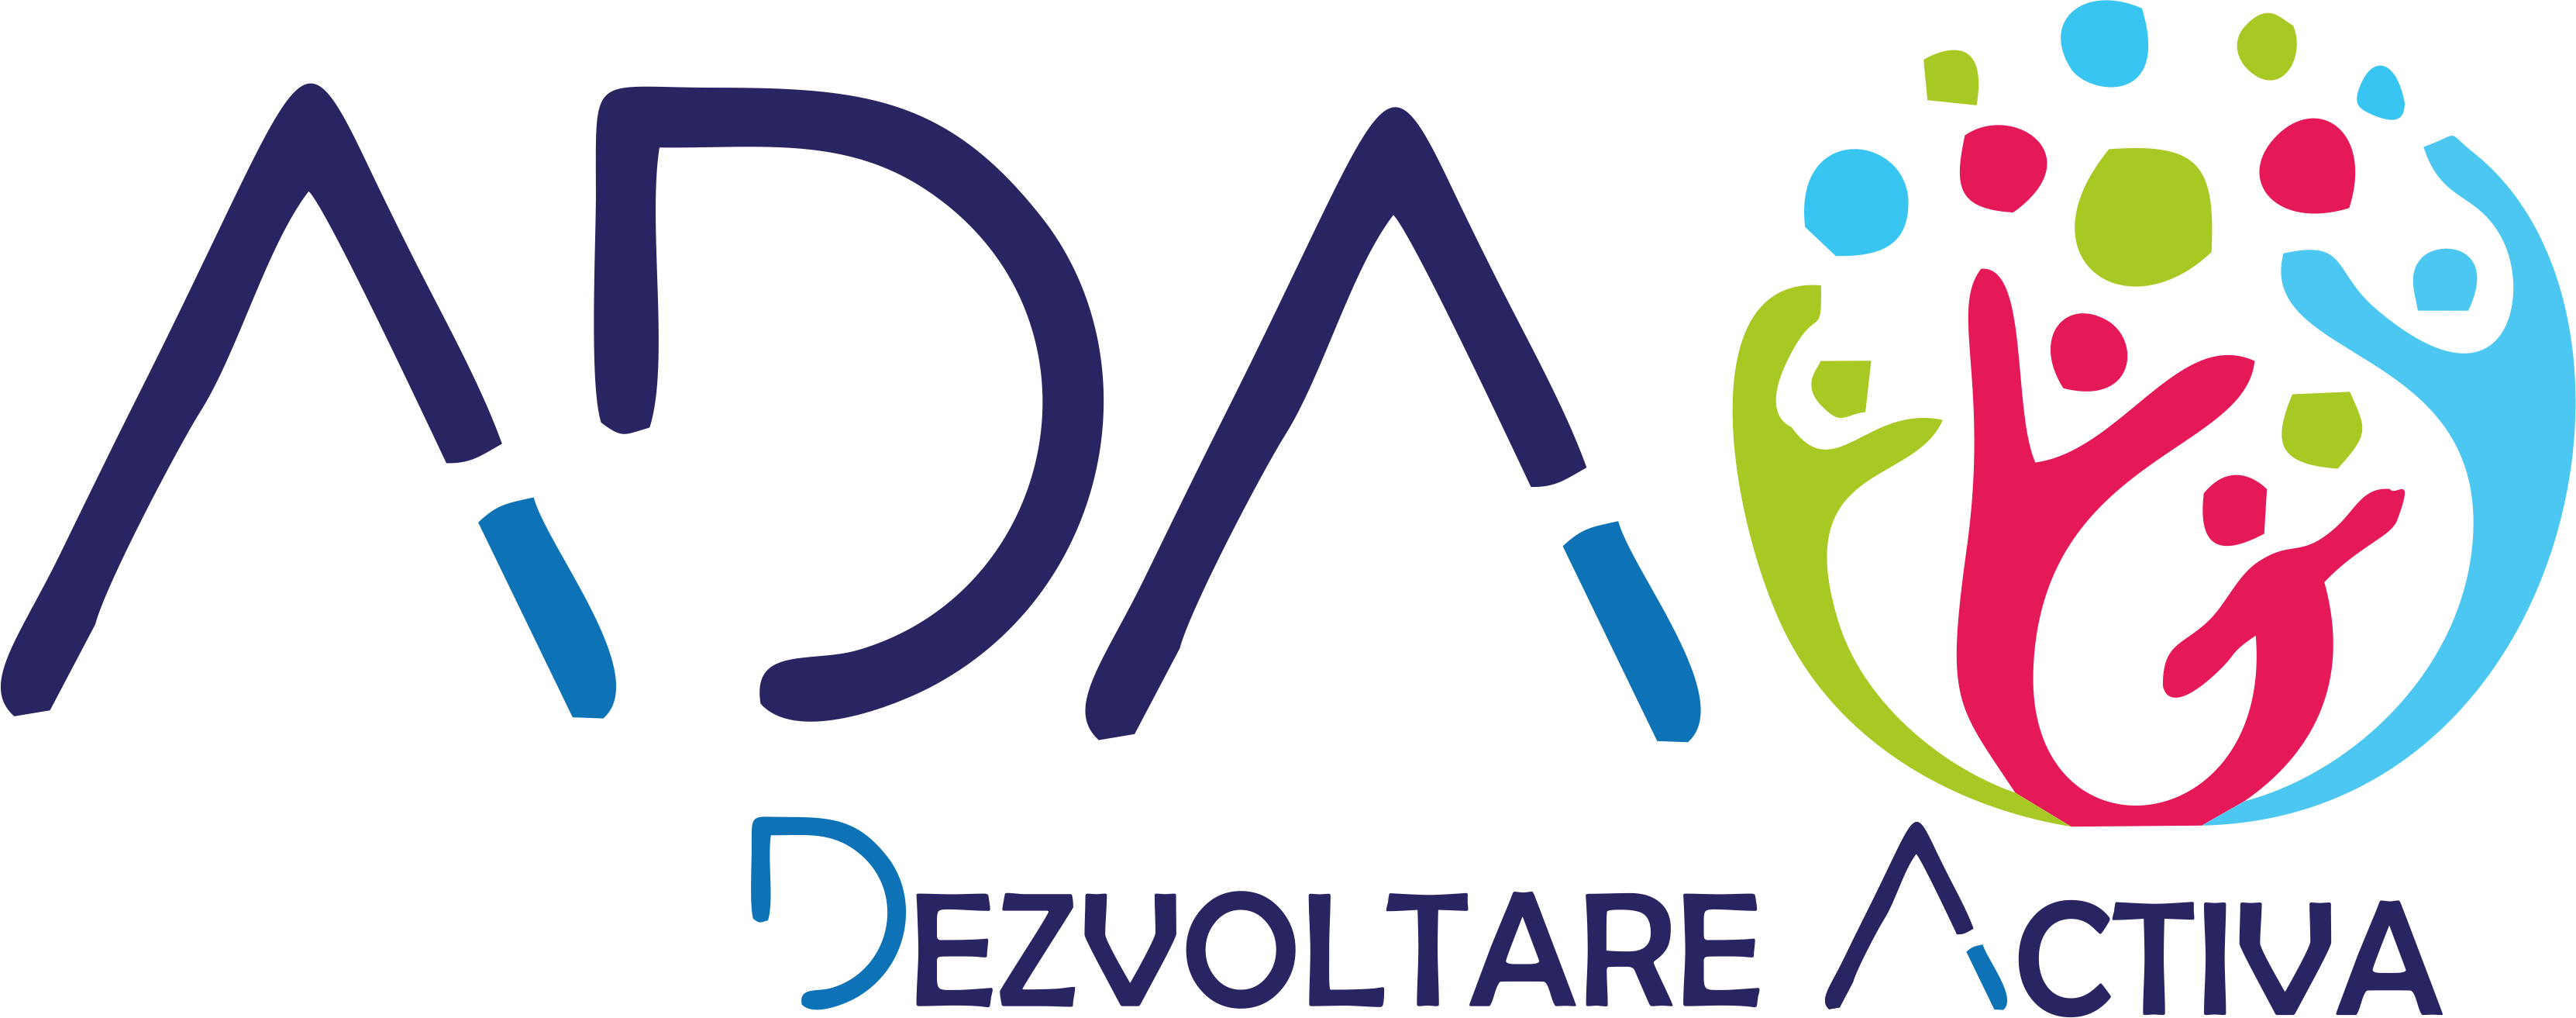 Asociația pentru Dezvoltare Activă logo